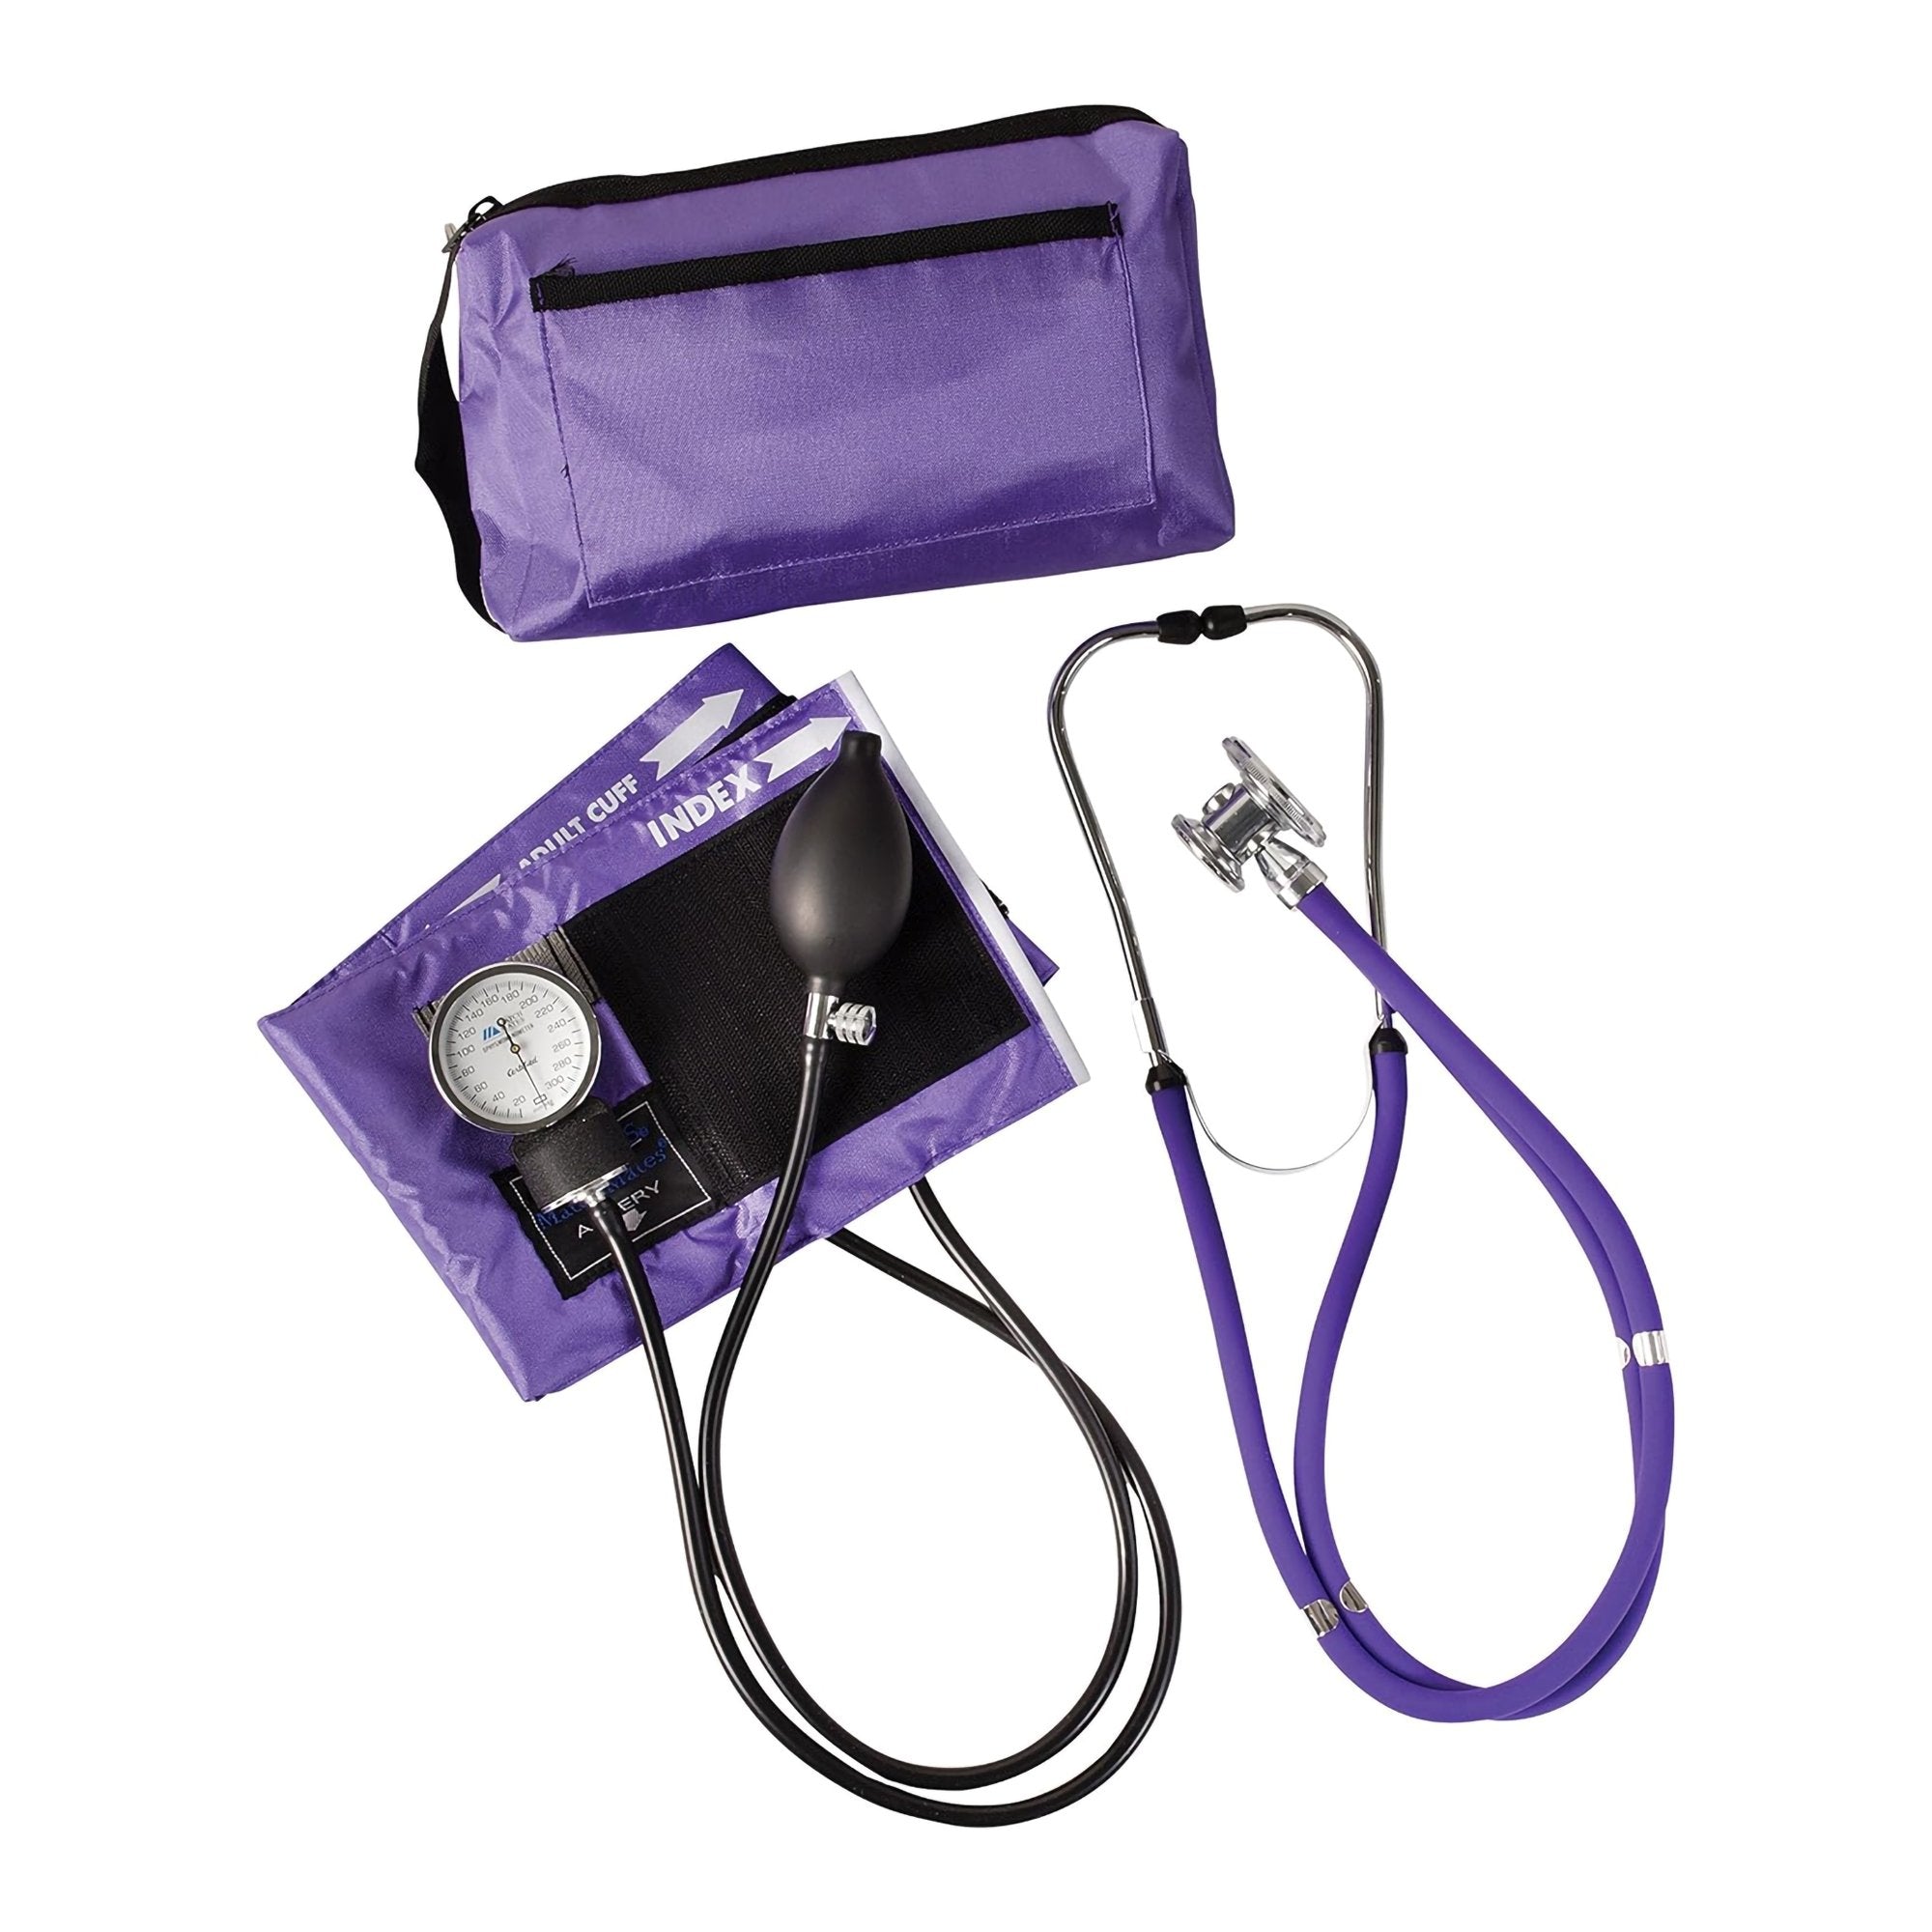 Mabis® Match Mates Manual Aneroid / Stethoscope Set, Purple